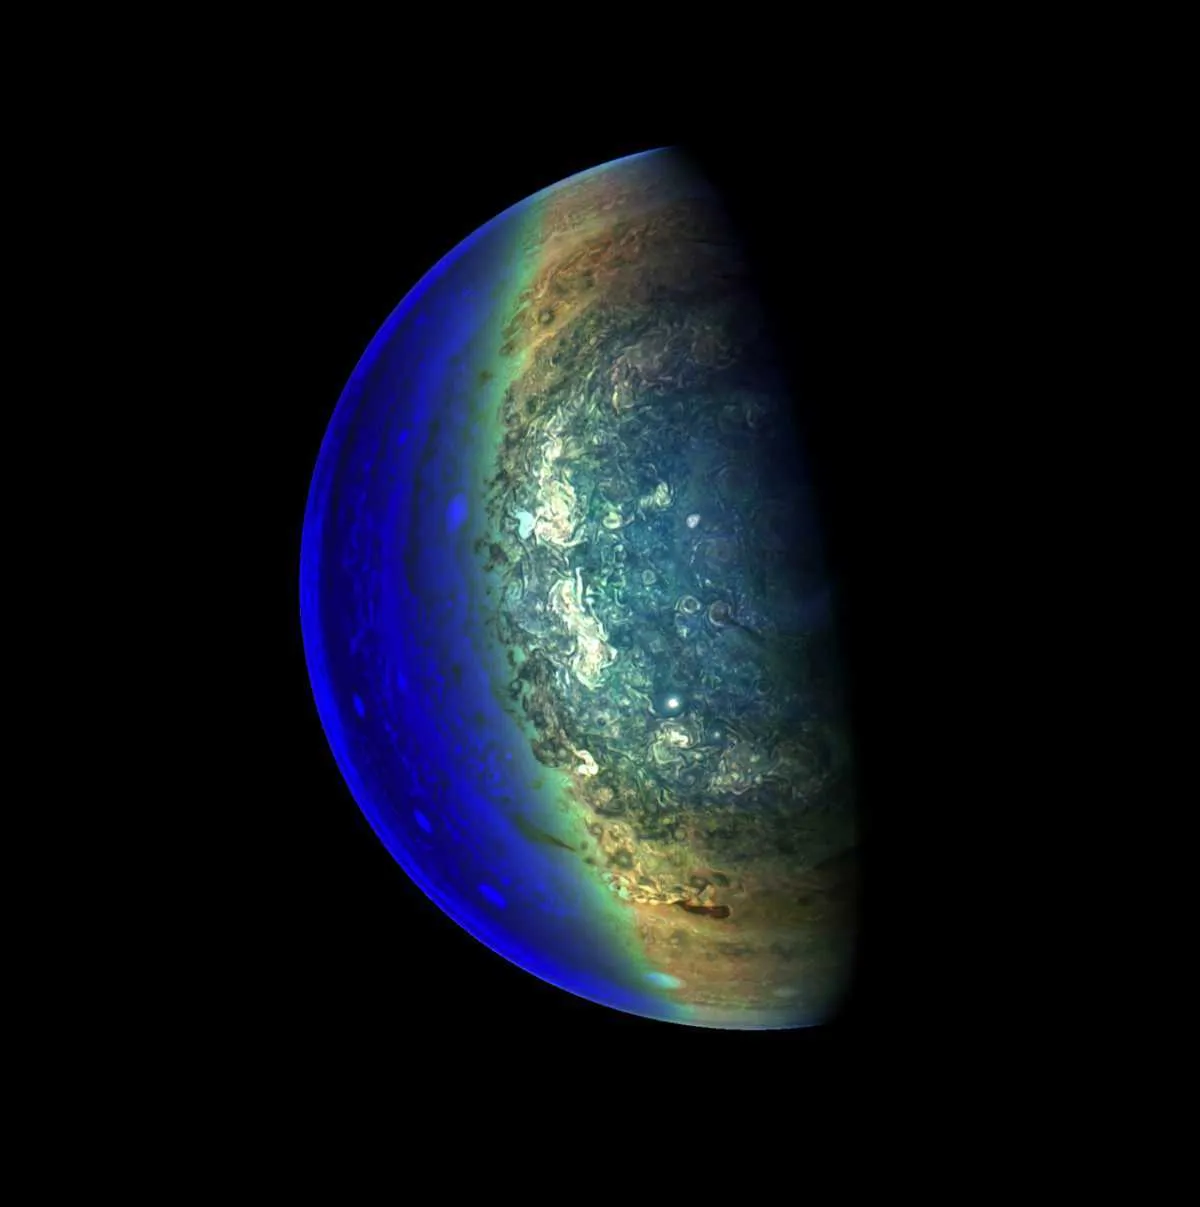 Jupiter's twilight zone © NASA/JPL-Caltech/SwRI/MSSS/Gerald Eichstadt